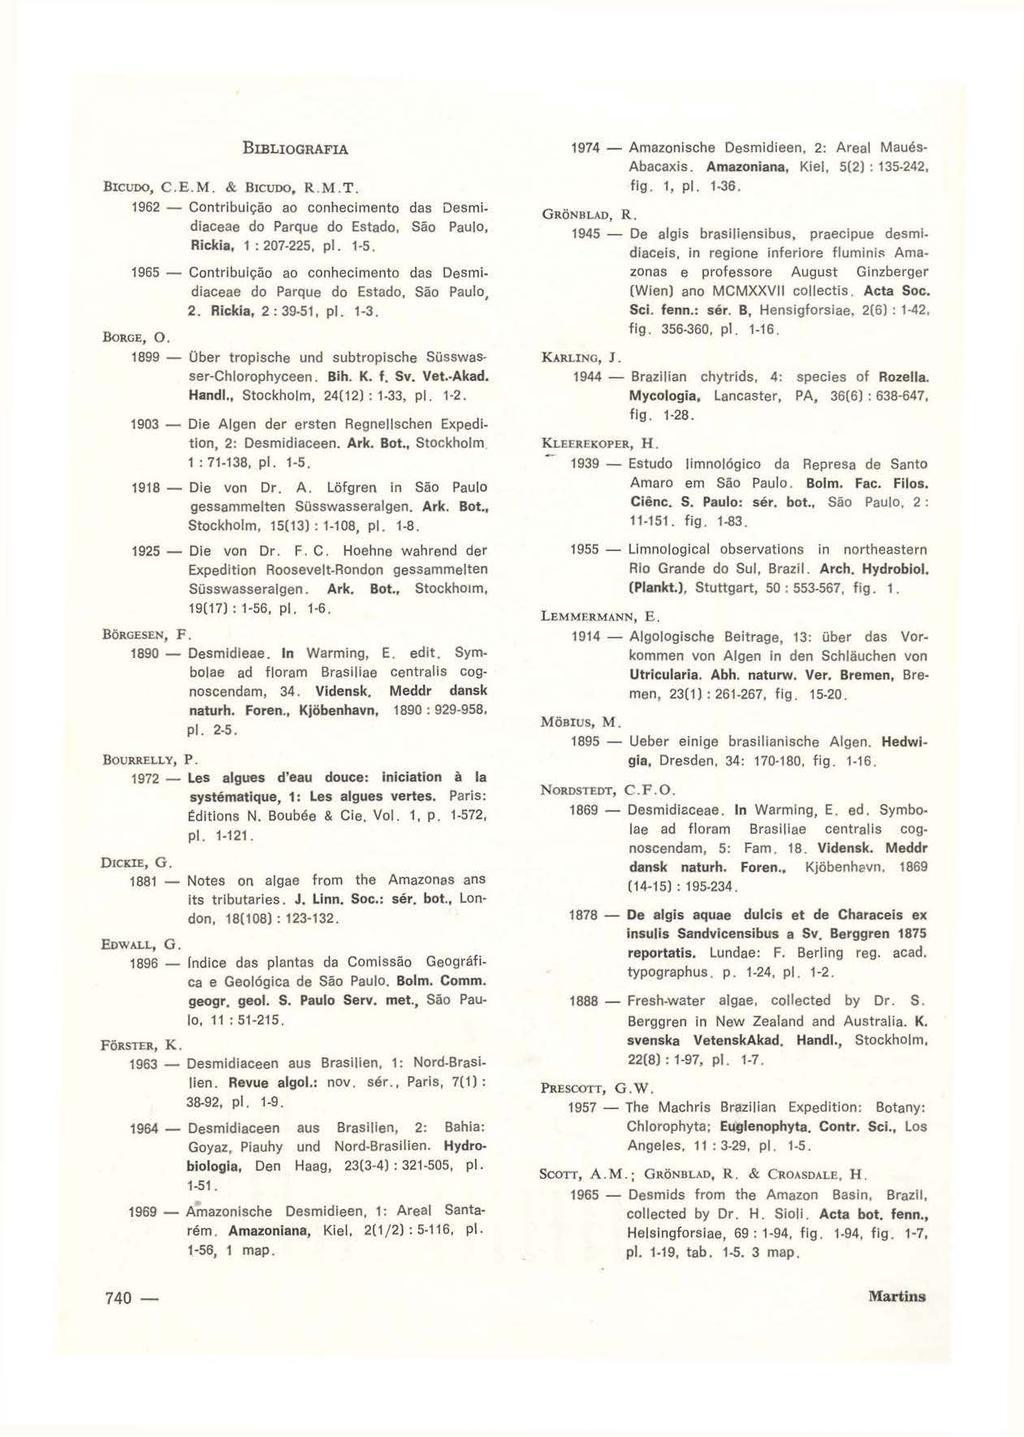 BIBLIOGRAFIA BICUDO, C.E.M. & BICUDO, R.M.T. 1962 - Contribuição ao conhecimento das Desmidiaceae do Parque do Estado, São Paulo, Rickia, 1 : 207-225, pl. 1-5.